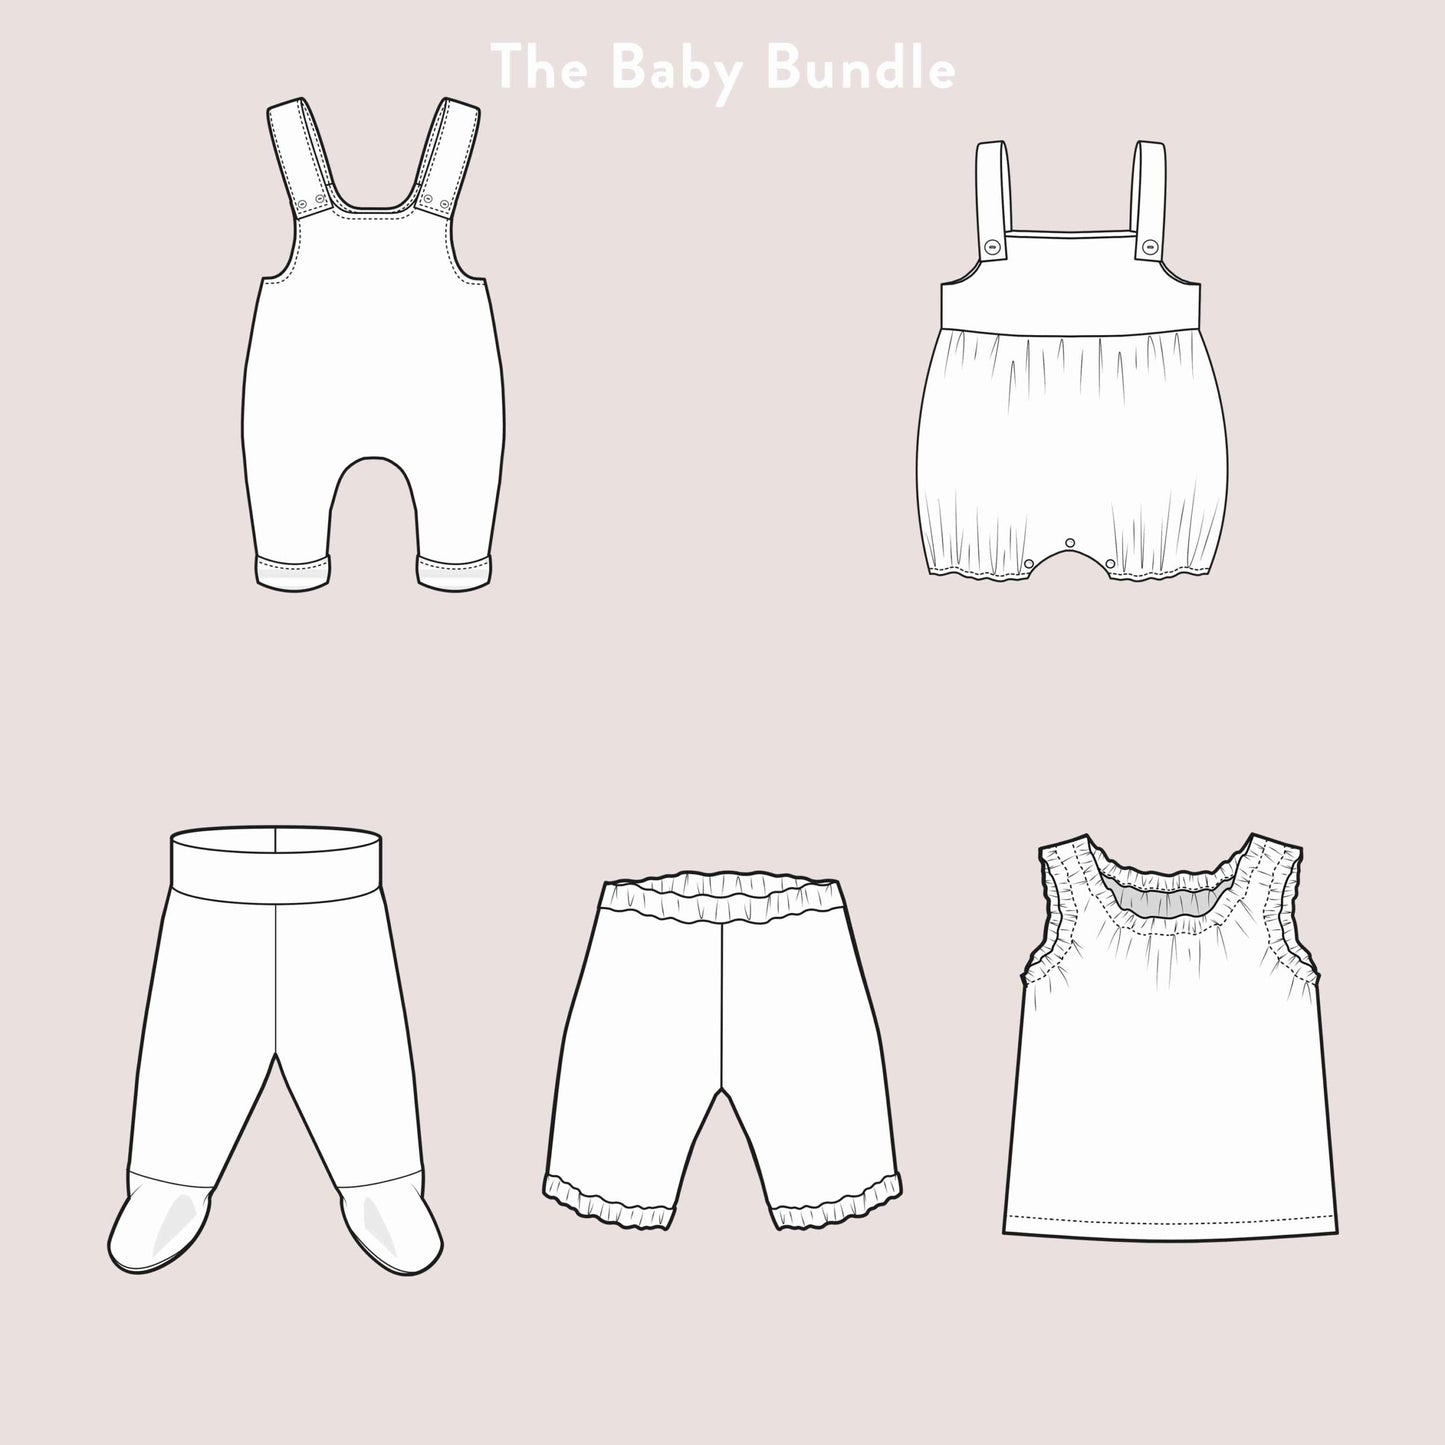 The Baby Bundle